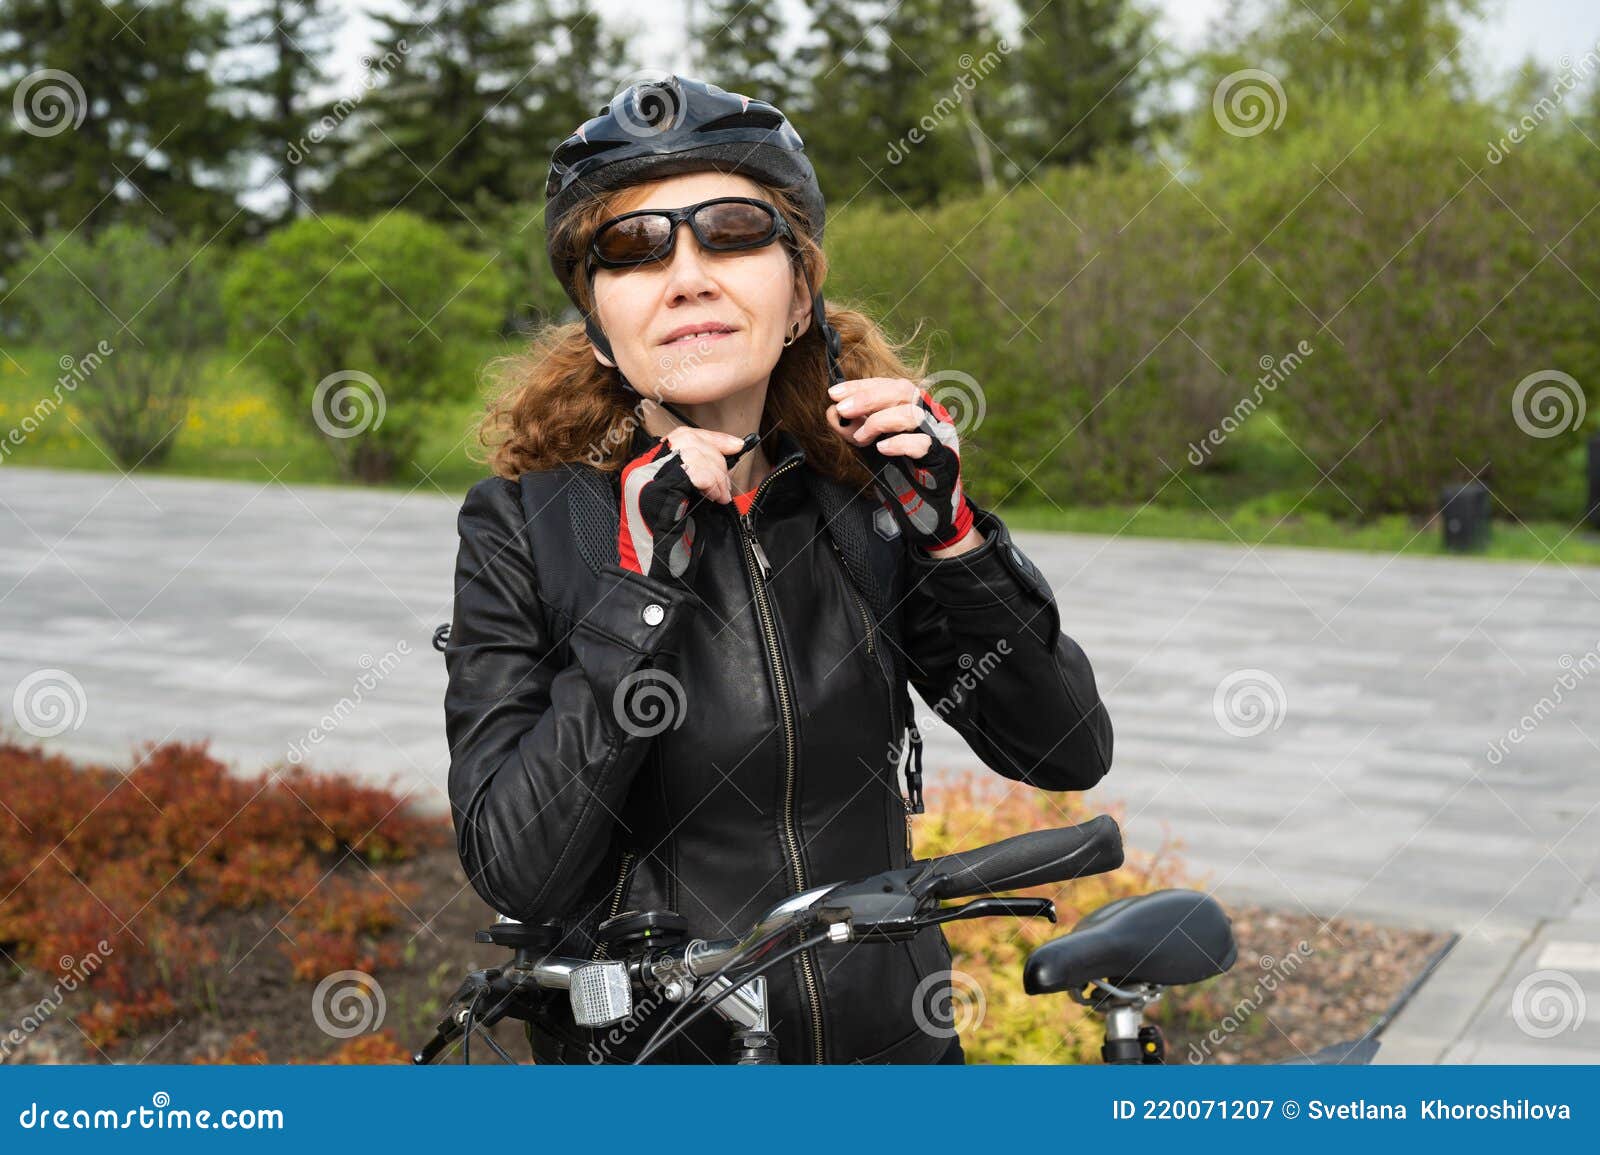 Casco de bicicleta para mujer 